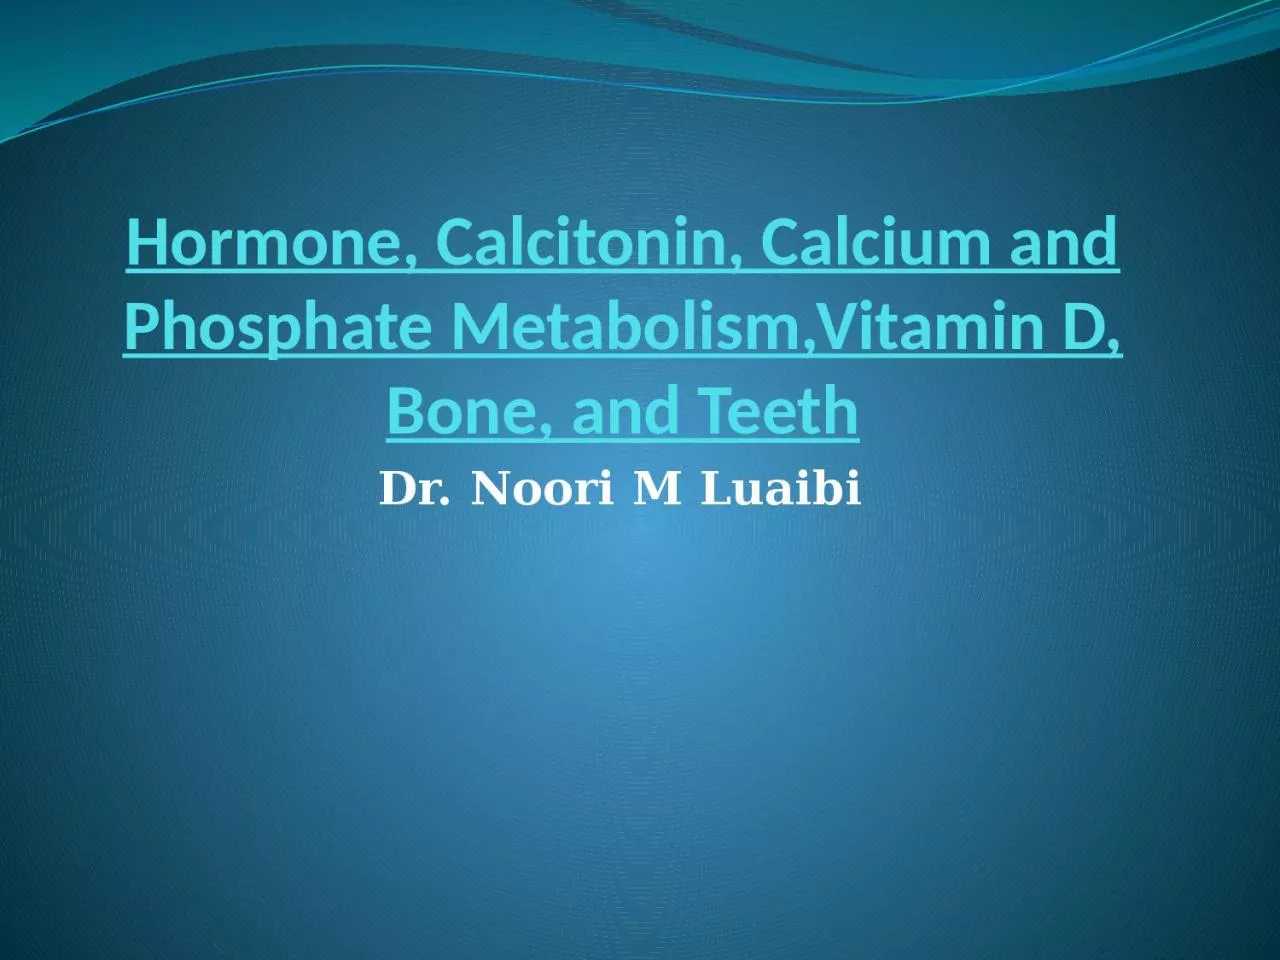 Hormone, Calcitonin, Calcium and Phosphate